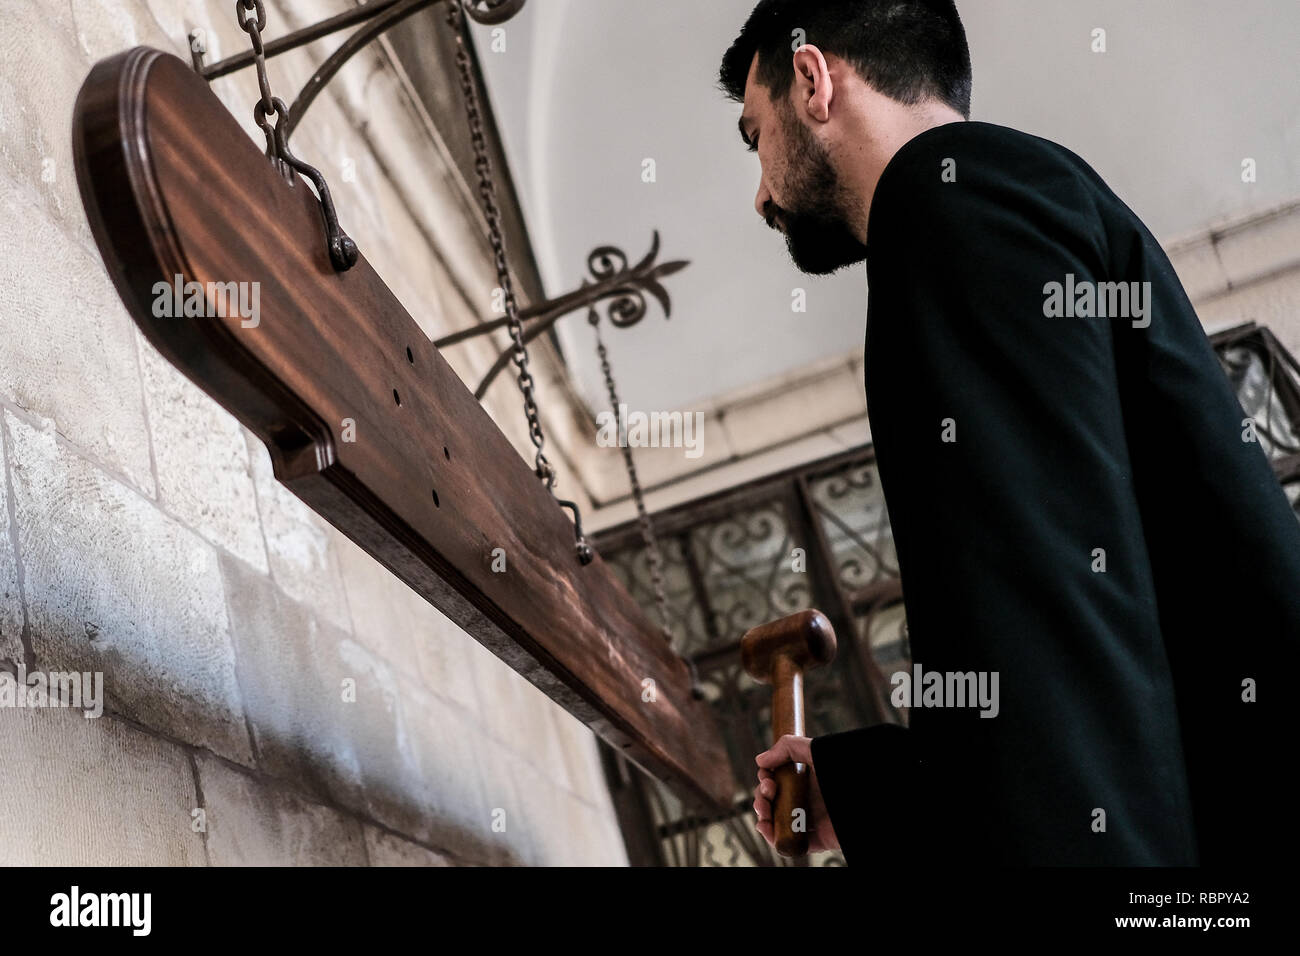 Eine Priesterschaft Seminarist Streiks Nakos oder simandron, Holzplatten statt der Glocken wird verwendet, wenn der osmanischen Herrscher das Läuten der Kirchenglocken verbot, t Stockfoto